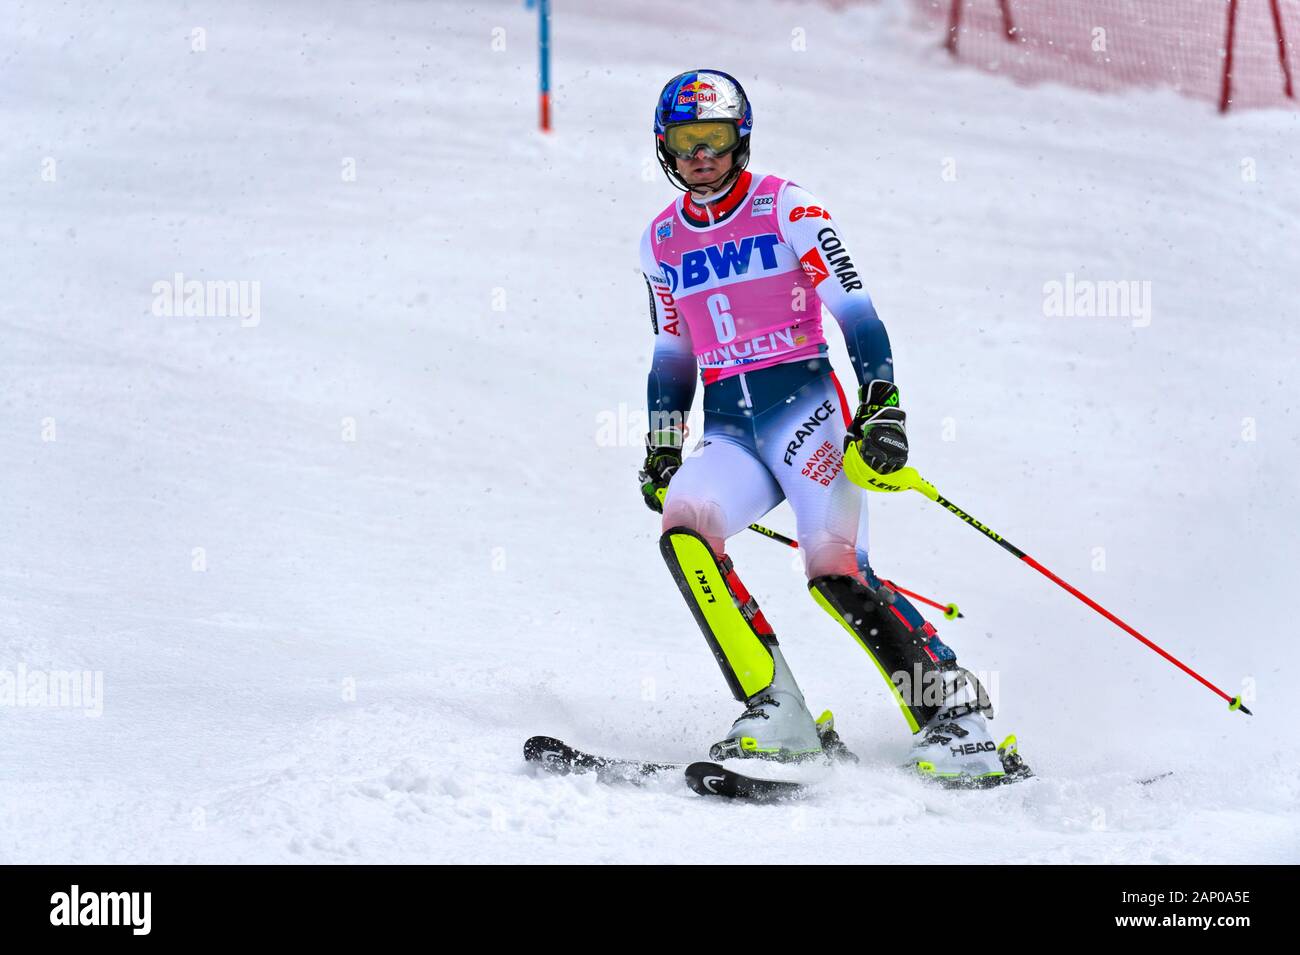 Alexis pinturault, Frankreich, Slalom Ski World Cup Wengen, Berner Oberland, Schweiz Stockfoto